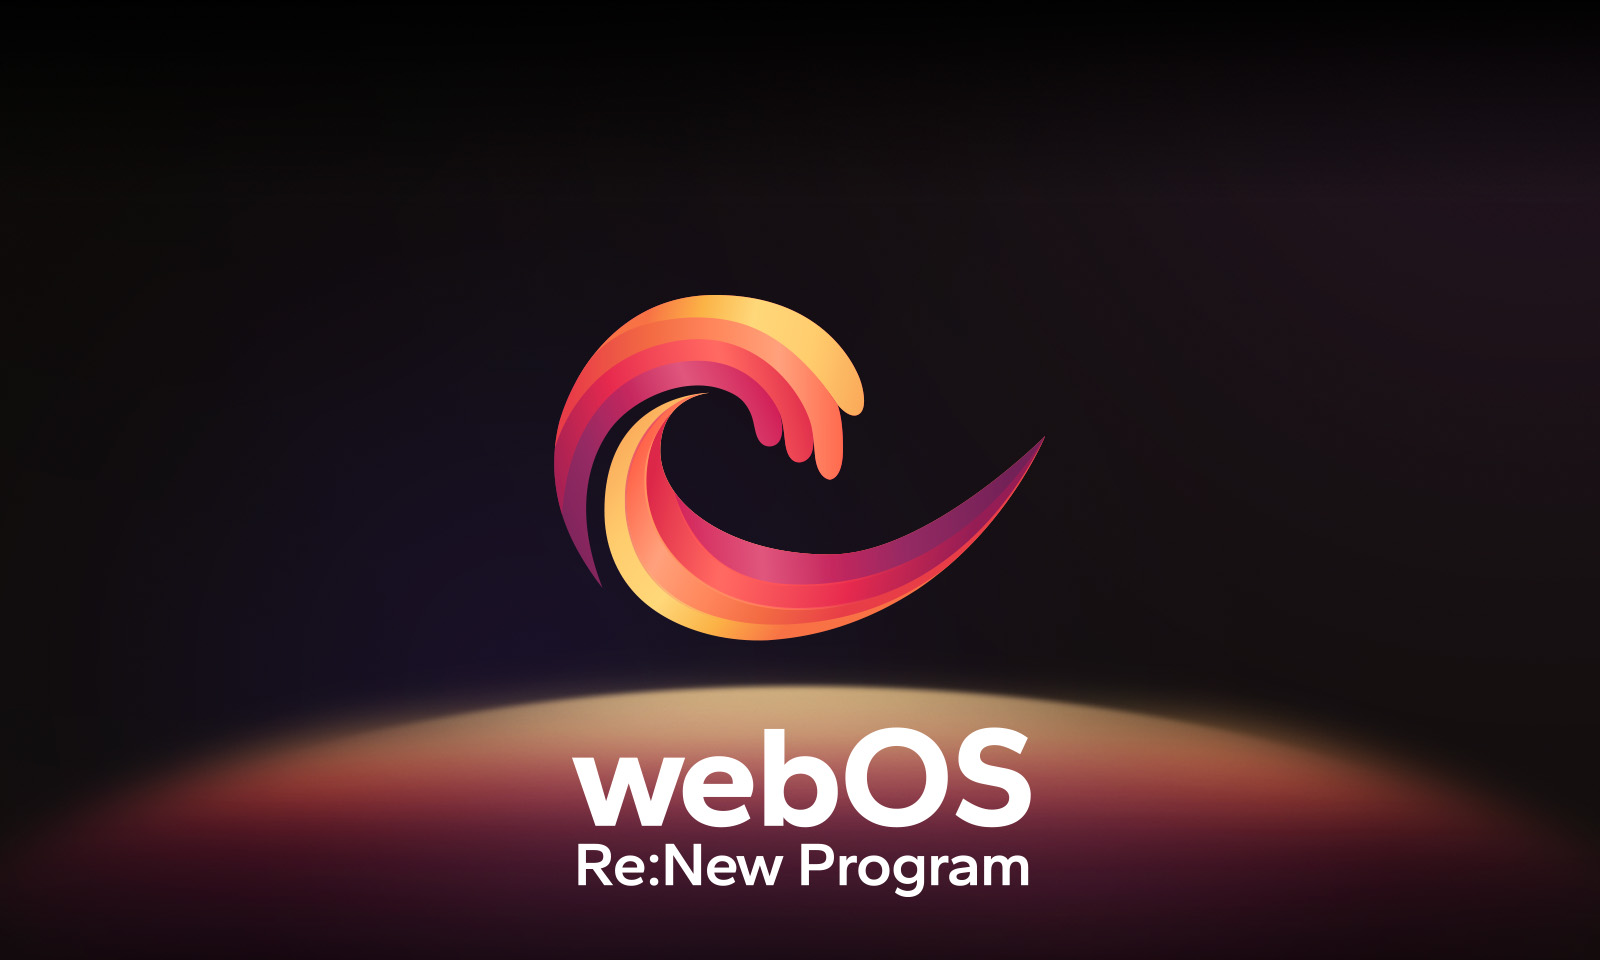 Le logo webOS flotte au centre sur un fond noir, et l’espace en dessous est éclairé aux couleurs rouge, orange et jaune du logo. Les mots "webOS Re:New Program" figurent sous le logo.